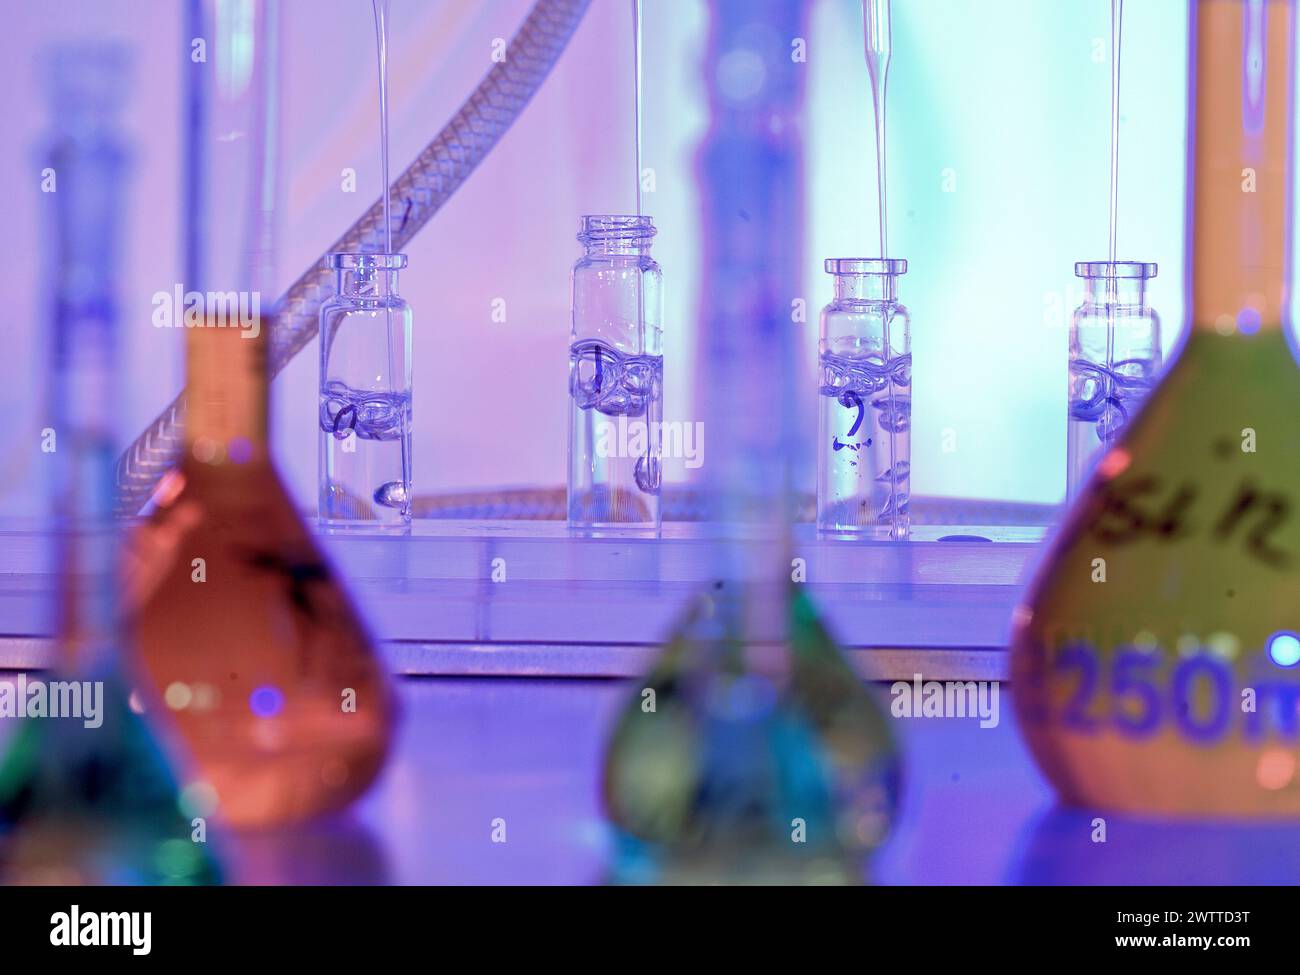 Farbwissenschaft: Laborglas in violetten und blauen Tönen Stockfoto